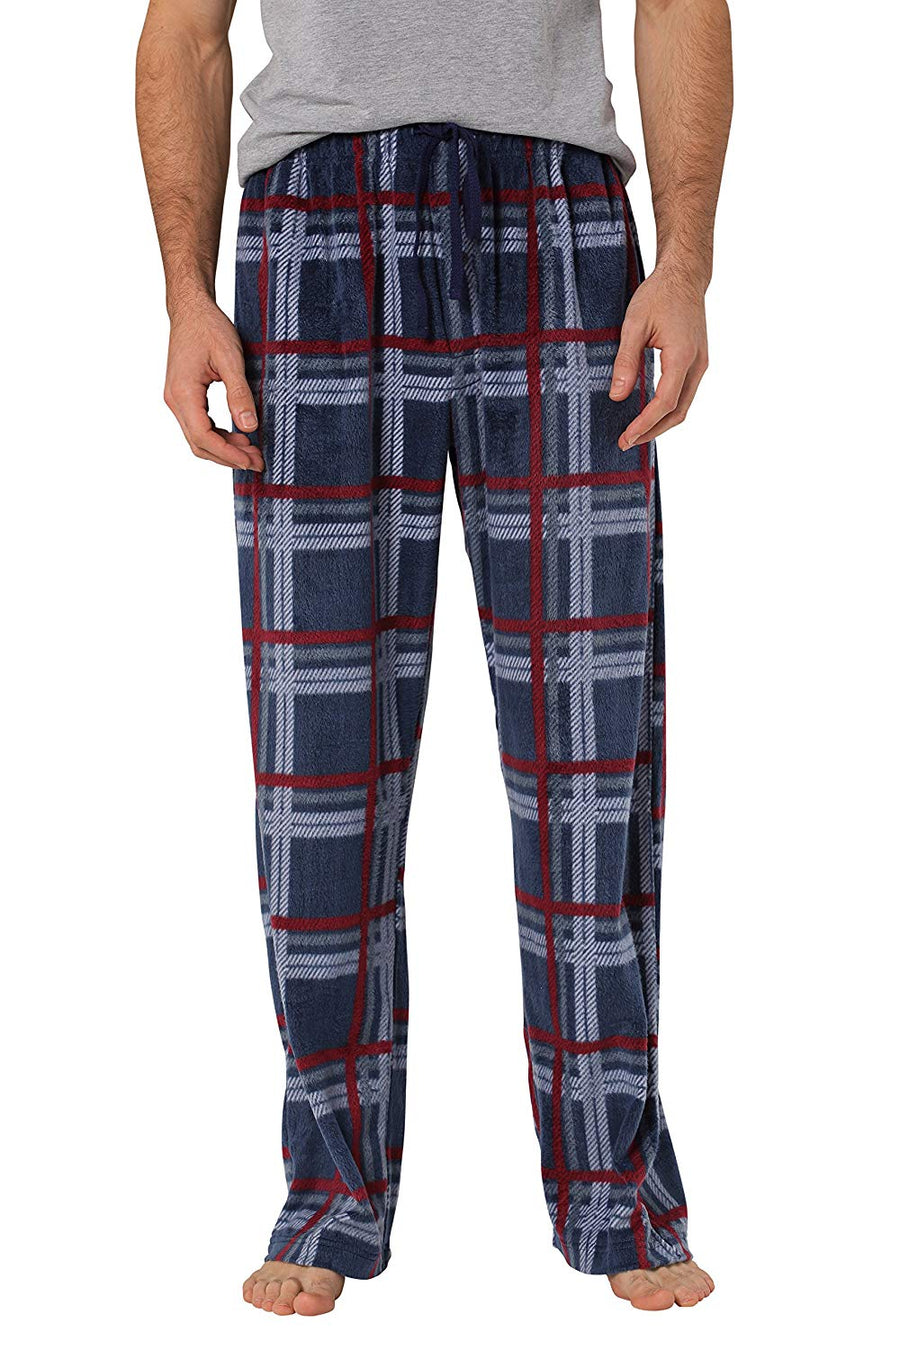 Men Red and Black Buffalo Plaid Pajama Pants, Polar Fleece Christmas Pajama  Pants with Pockets, Waistband Cord